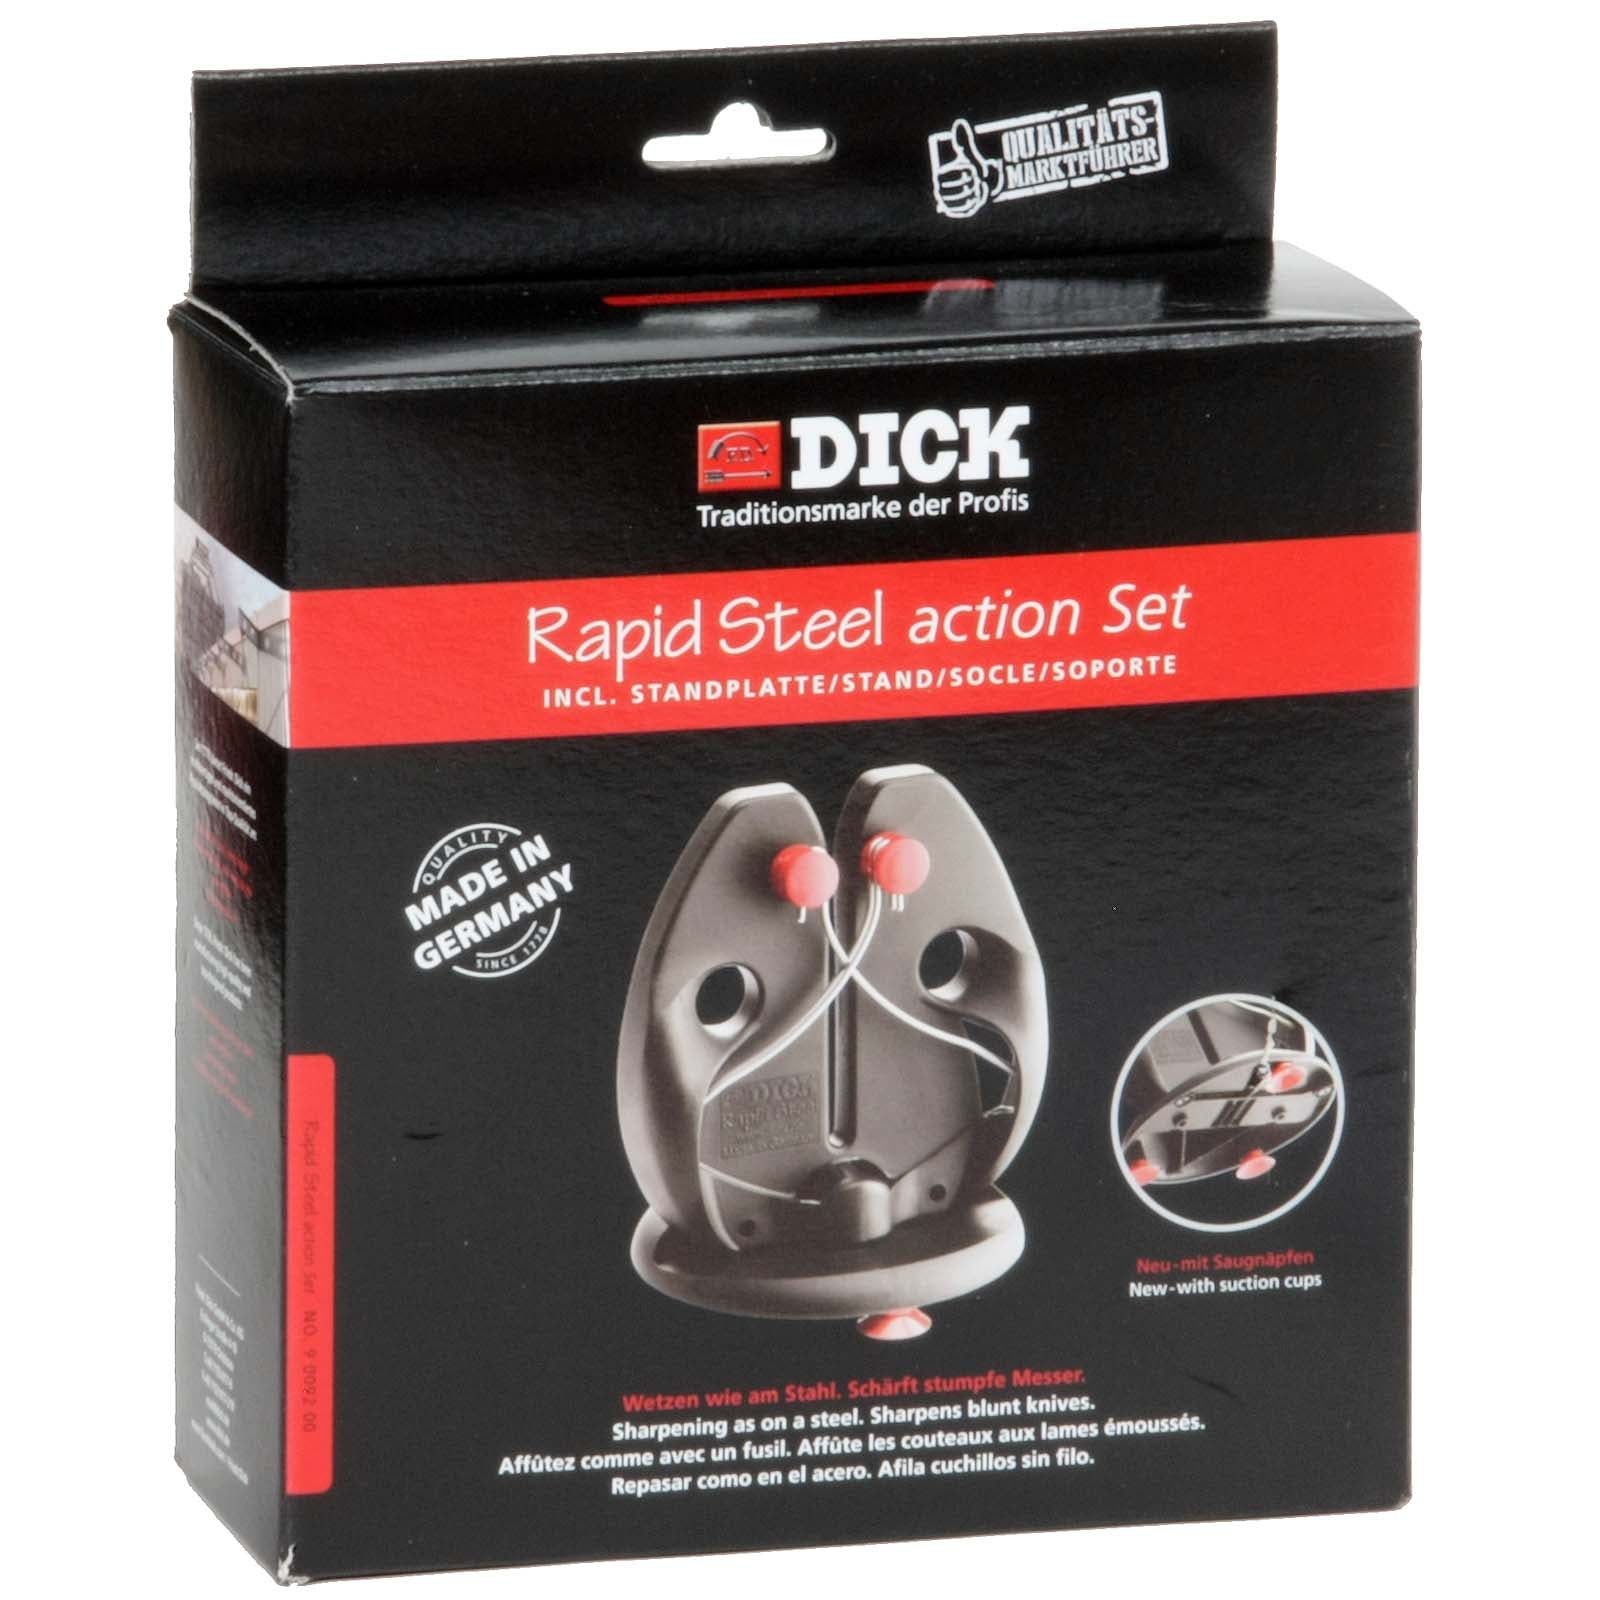 Dick-Rapid-Steel action-Set inkl. Standplatte